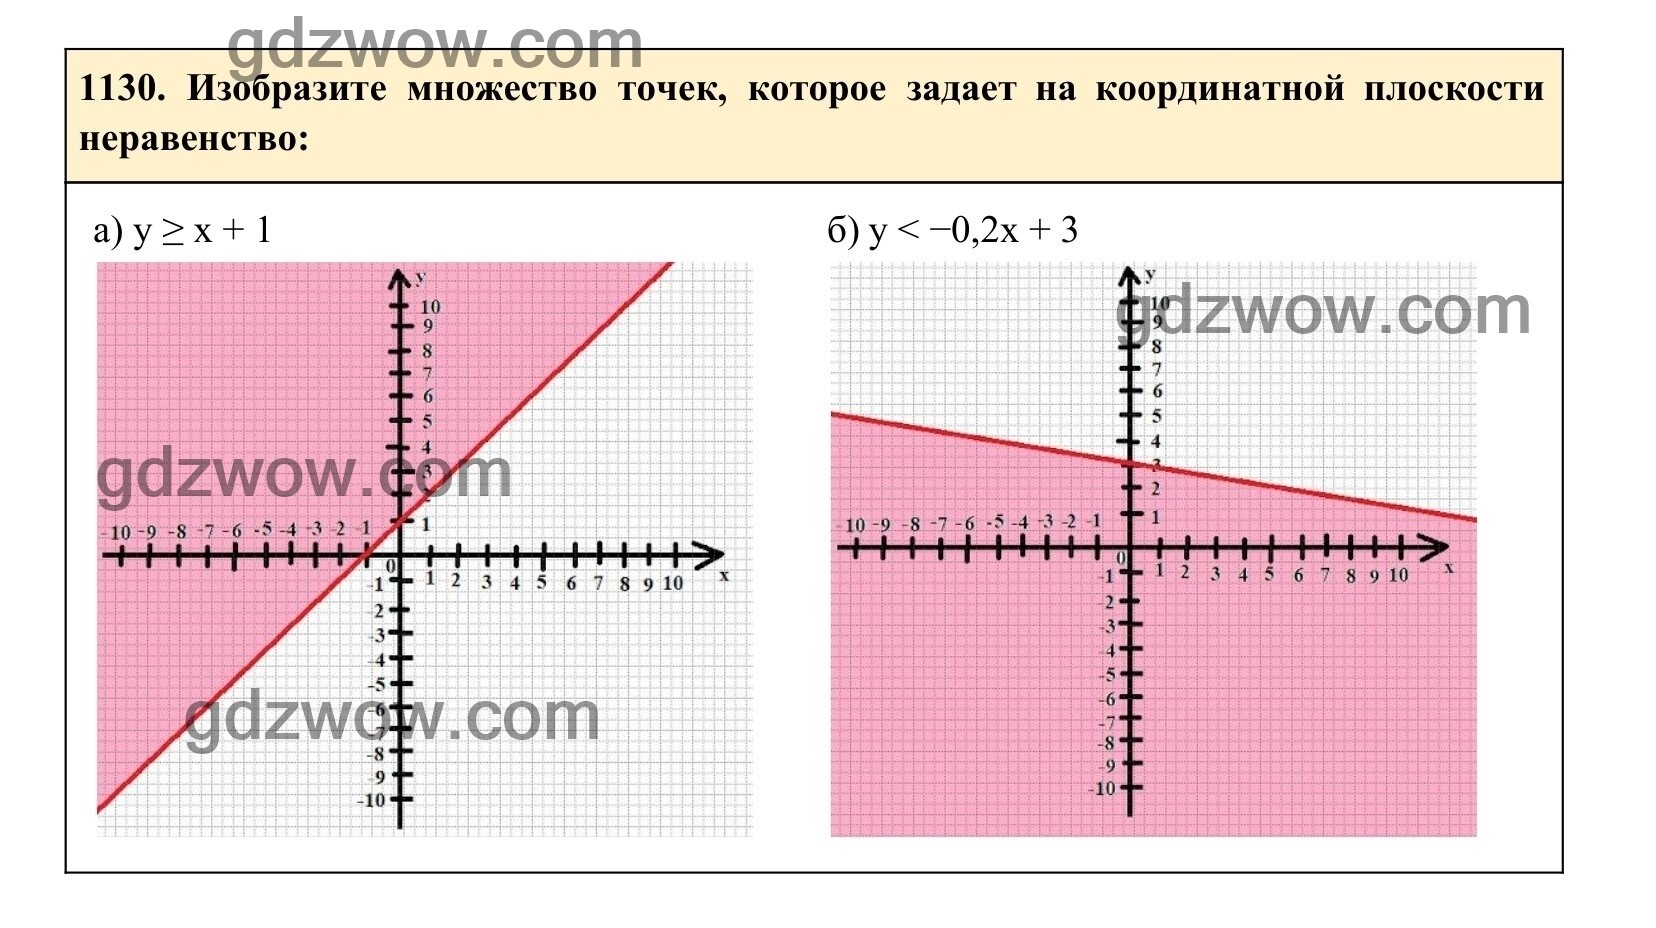 Упражнение 1130 - ГДЗ по Алгебре 7 класс Учебник Макарычев (решебник) - GDZwow